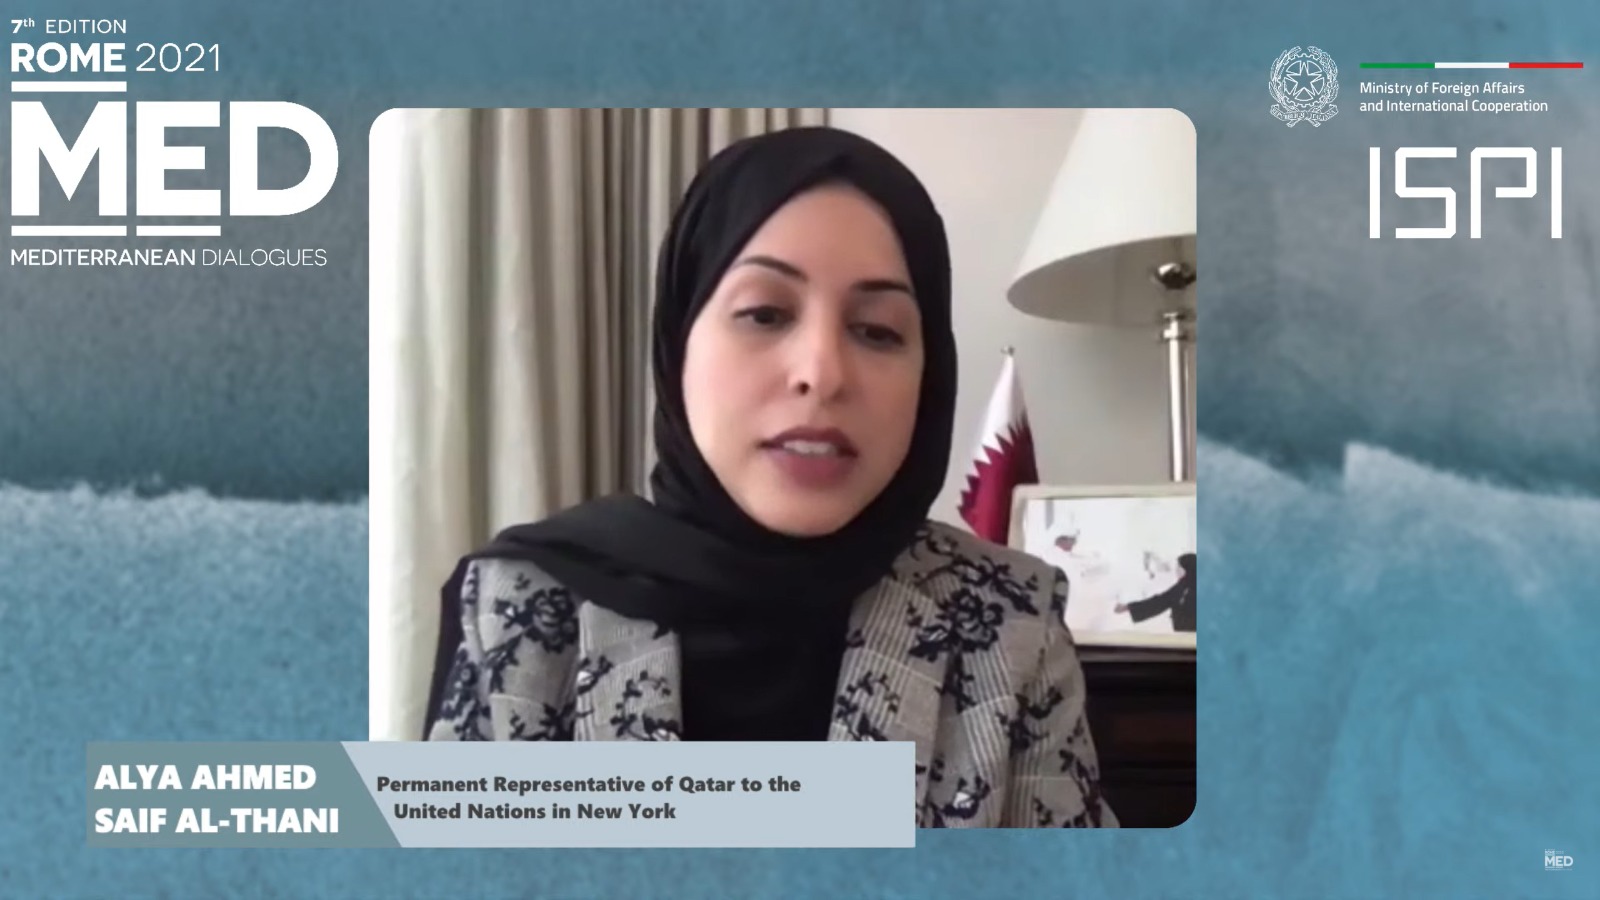 المندوب الدائم لدولة قطر تشارك باجتماع افتراضي حول حماية الأطفال وإعلان المدارس الآمنة